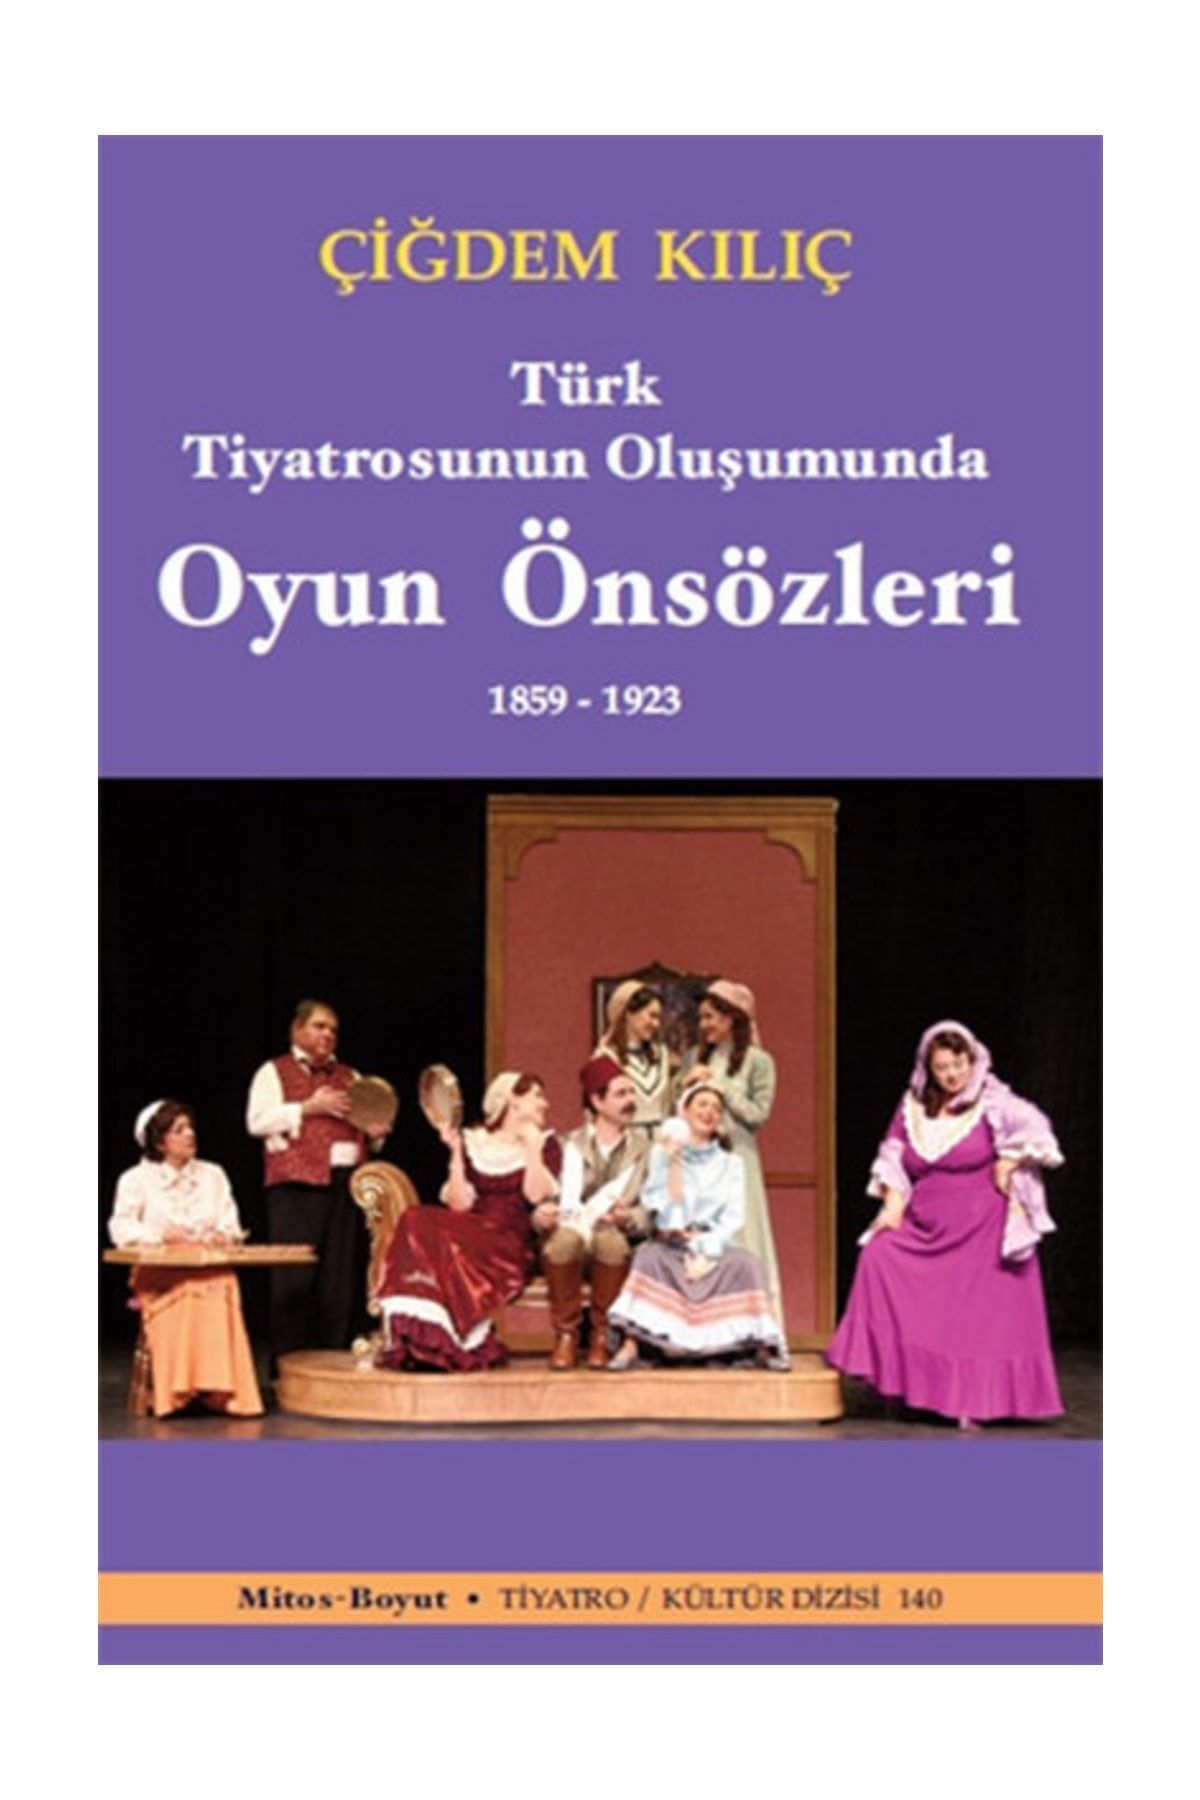 Mitos Boyut Yayınları Türk Tiyatrosunun Oluşumunda Oyun Önsözleri 1859-1923 - Çiğdem Kılıç